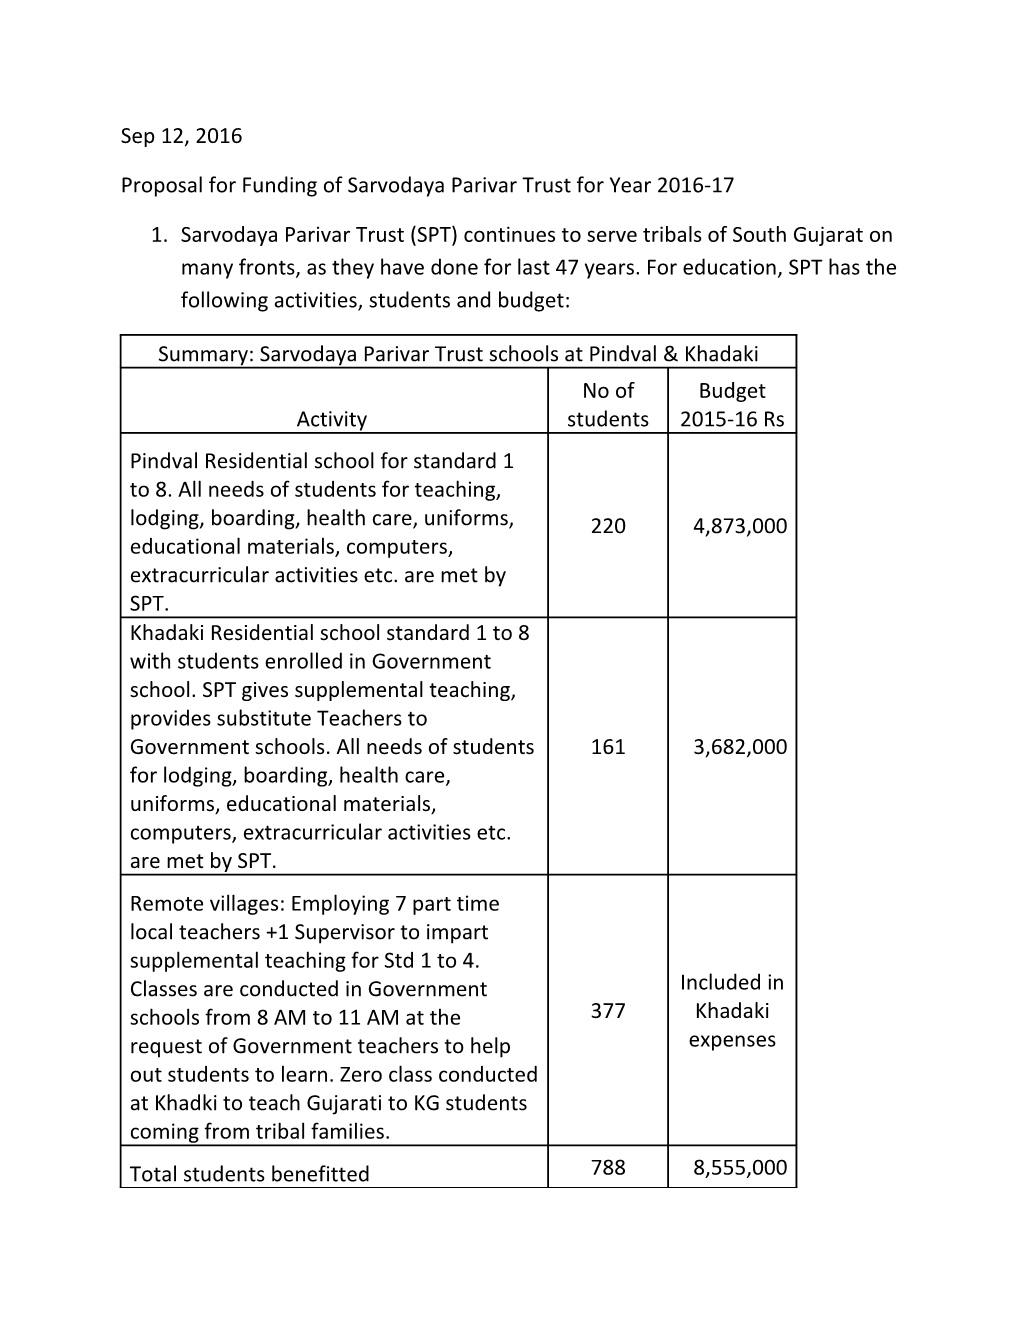 Proposal for Funding of Sarvodaya Parivar Trust for Year 2016-17